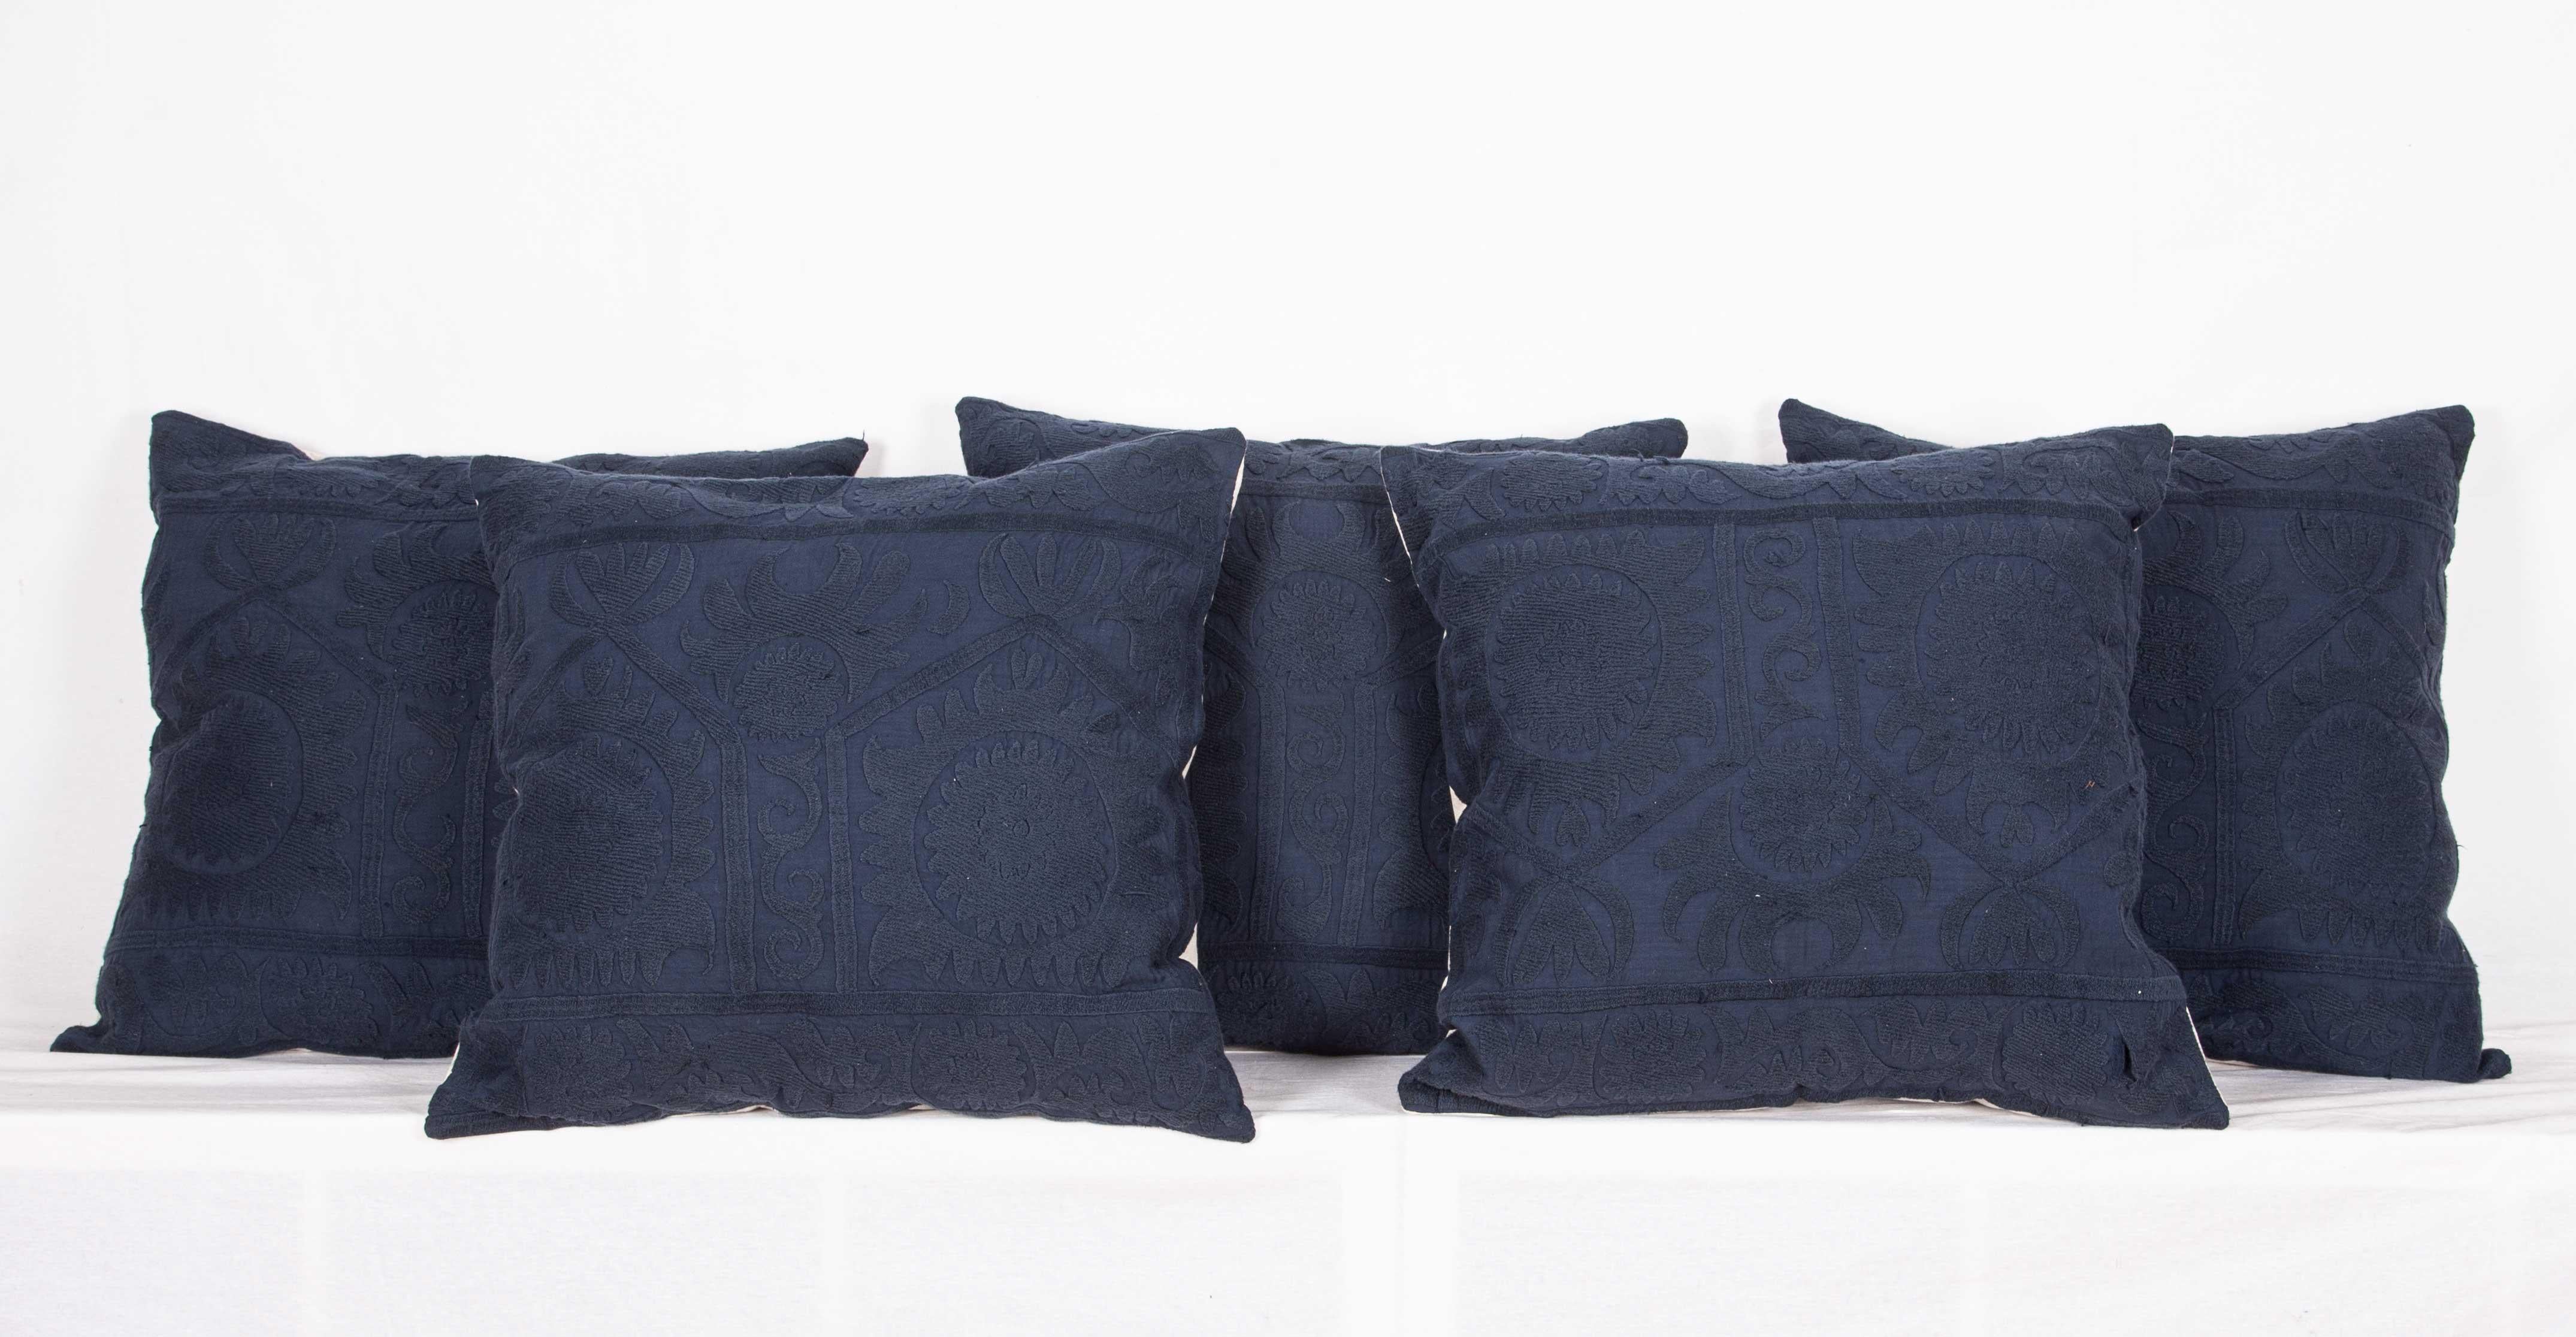 Ces taies d'oreiller Suzani sont fabriquées à partir de Suzanis vintage surteintées. Le résultat est là, un look minimaliste avec un peu de texture.
Lin à l'arrière
fermeture éclair
Le nettoyage à sec est recommandé
Mesures : 55 x 57 cm/21.65 x